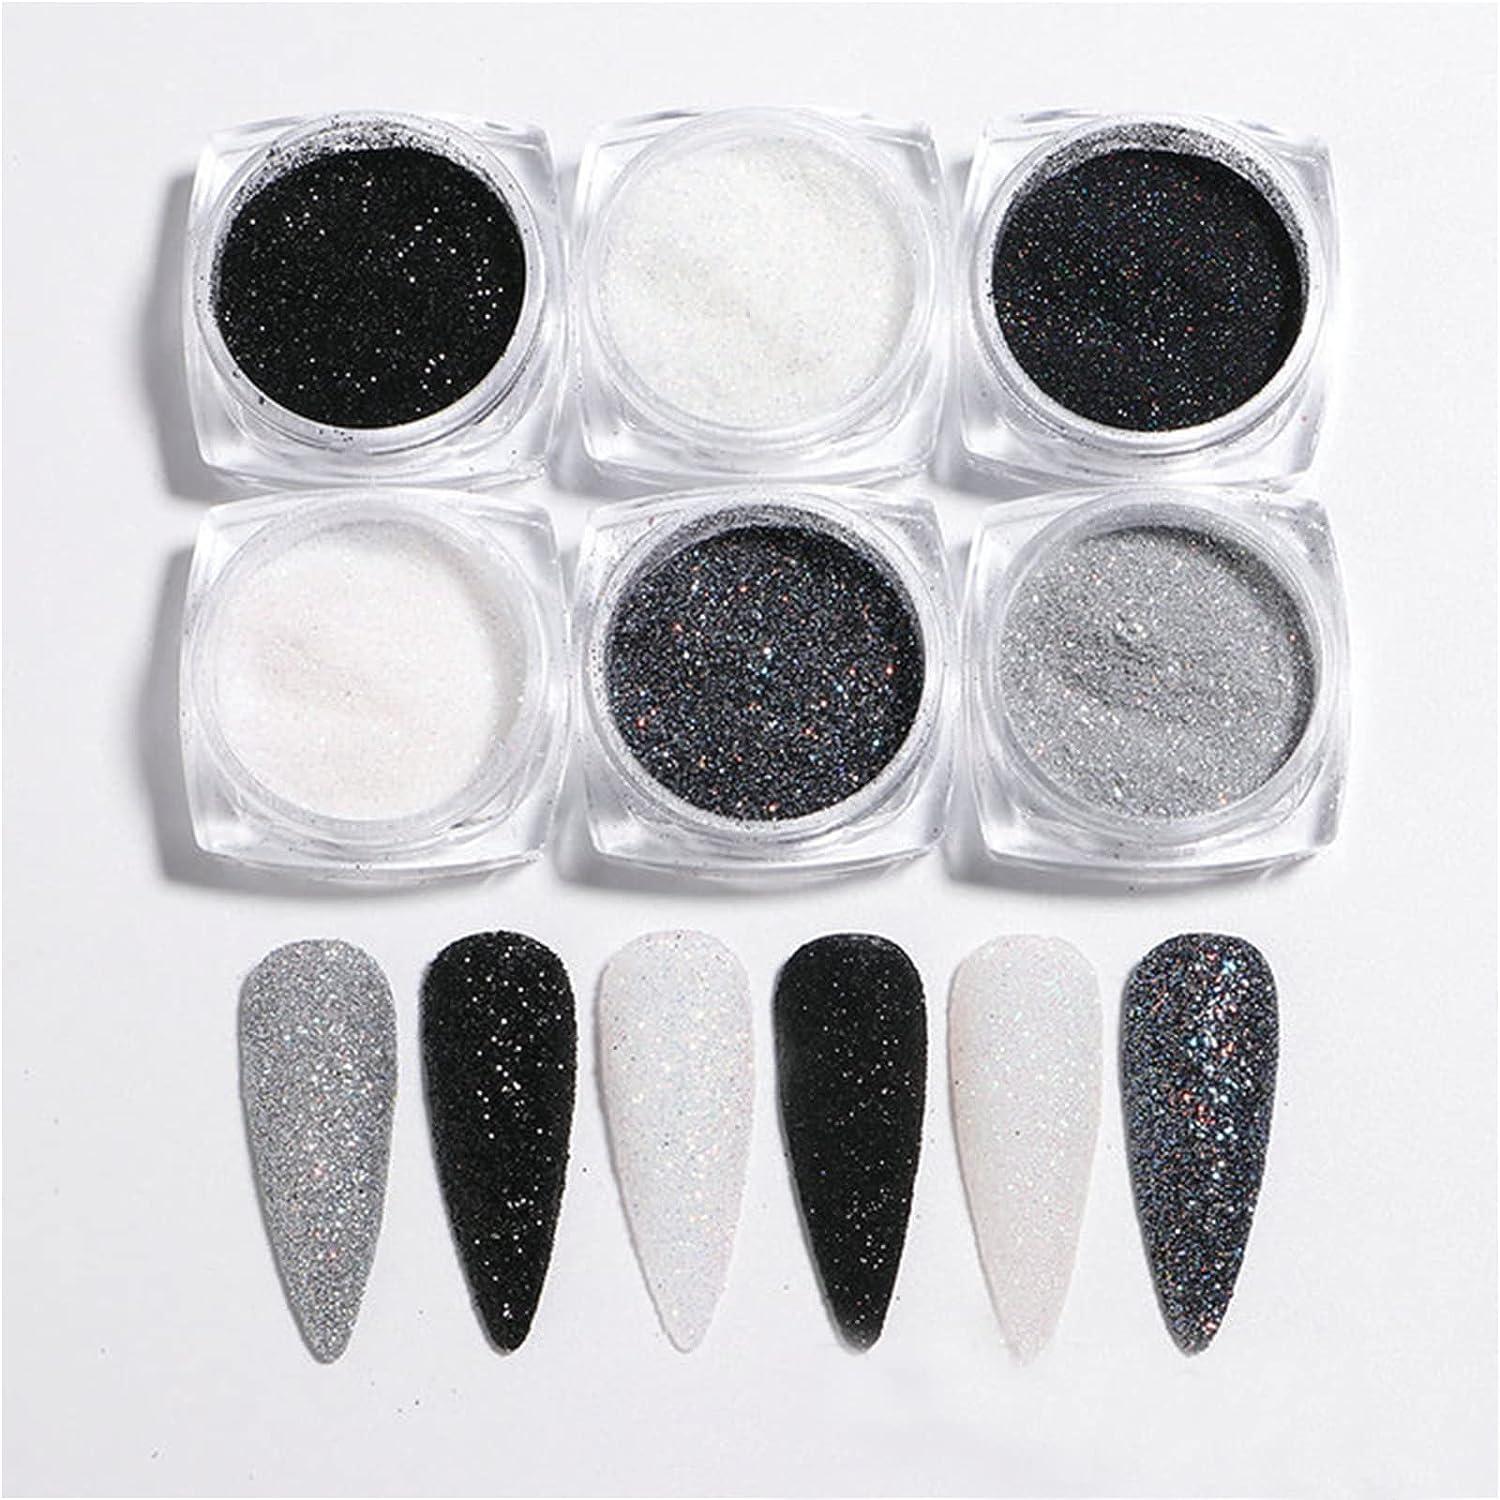 Superfine French Nail Glitter Powder - Black White Snow Design